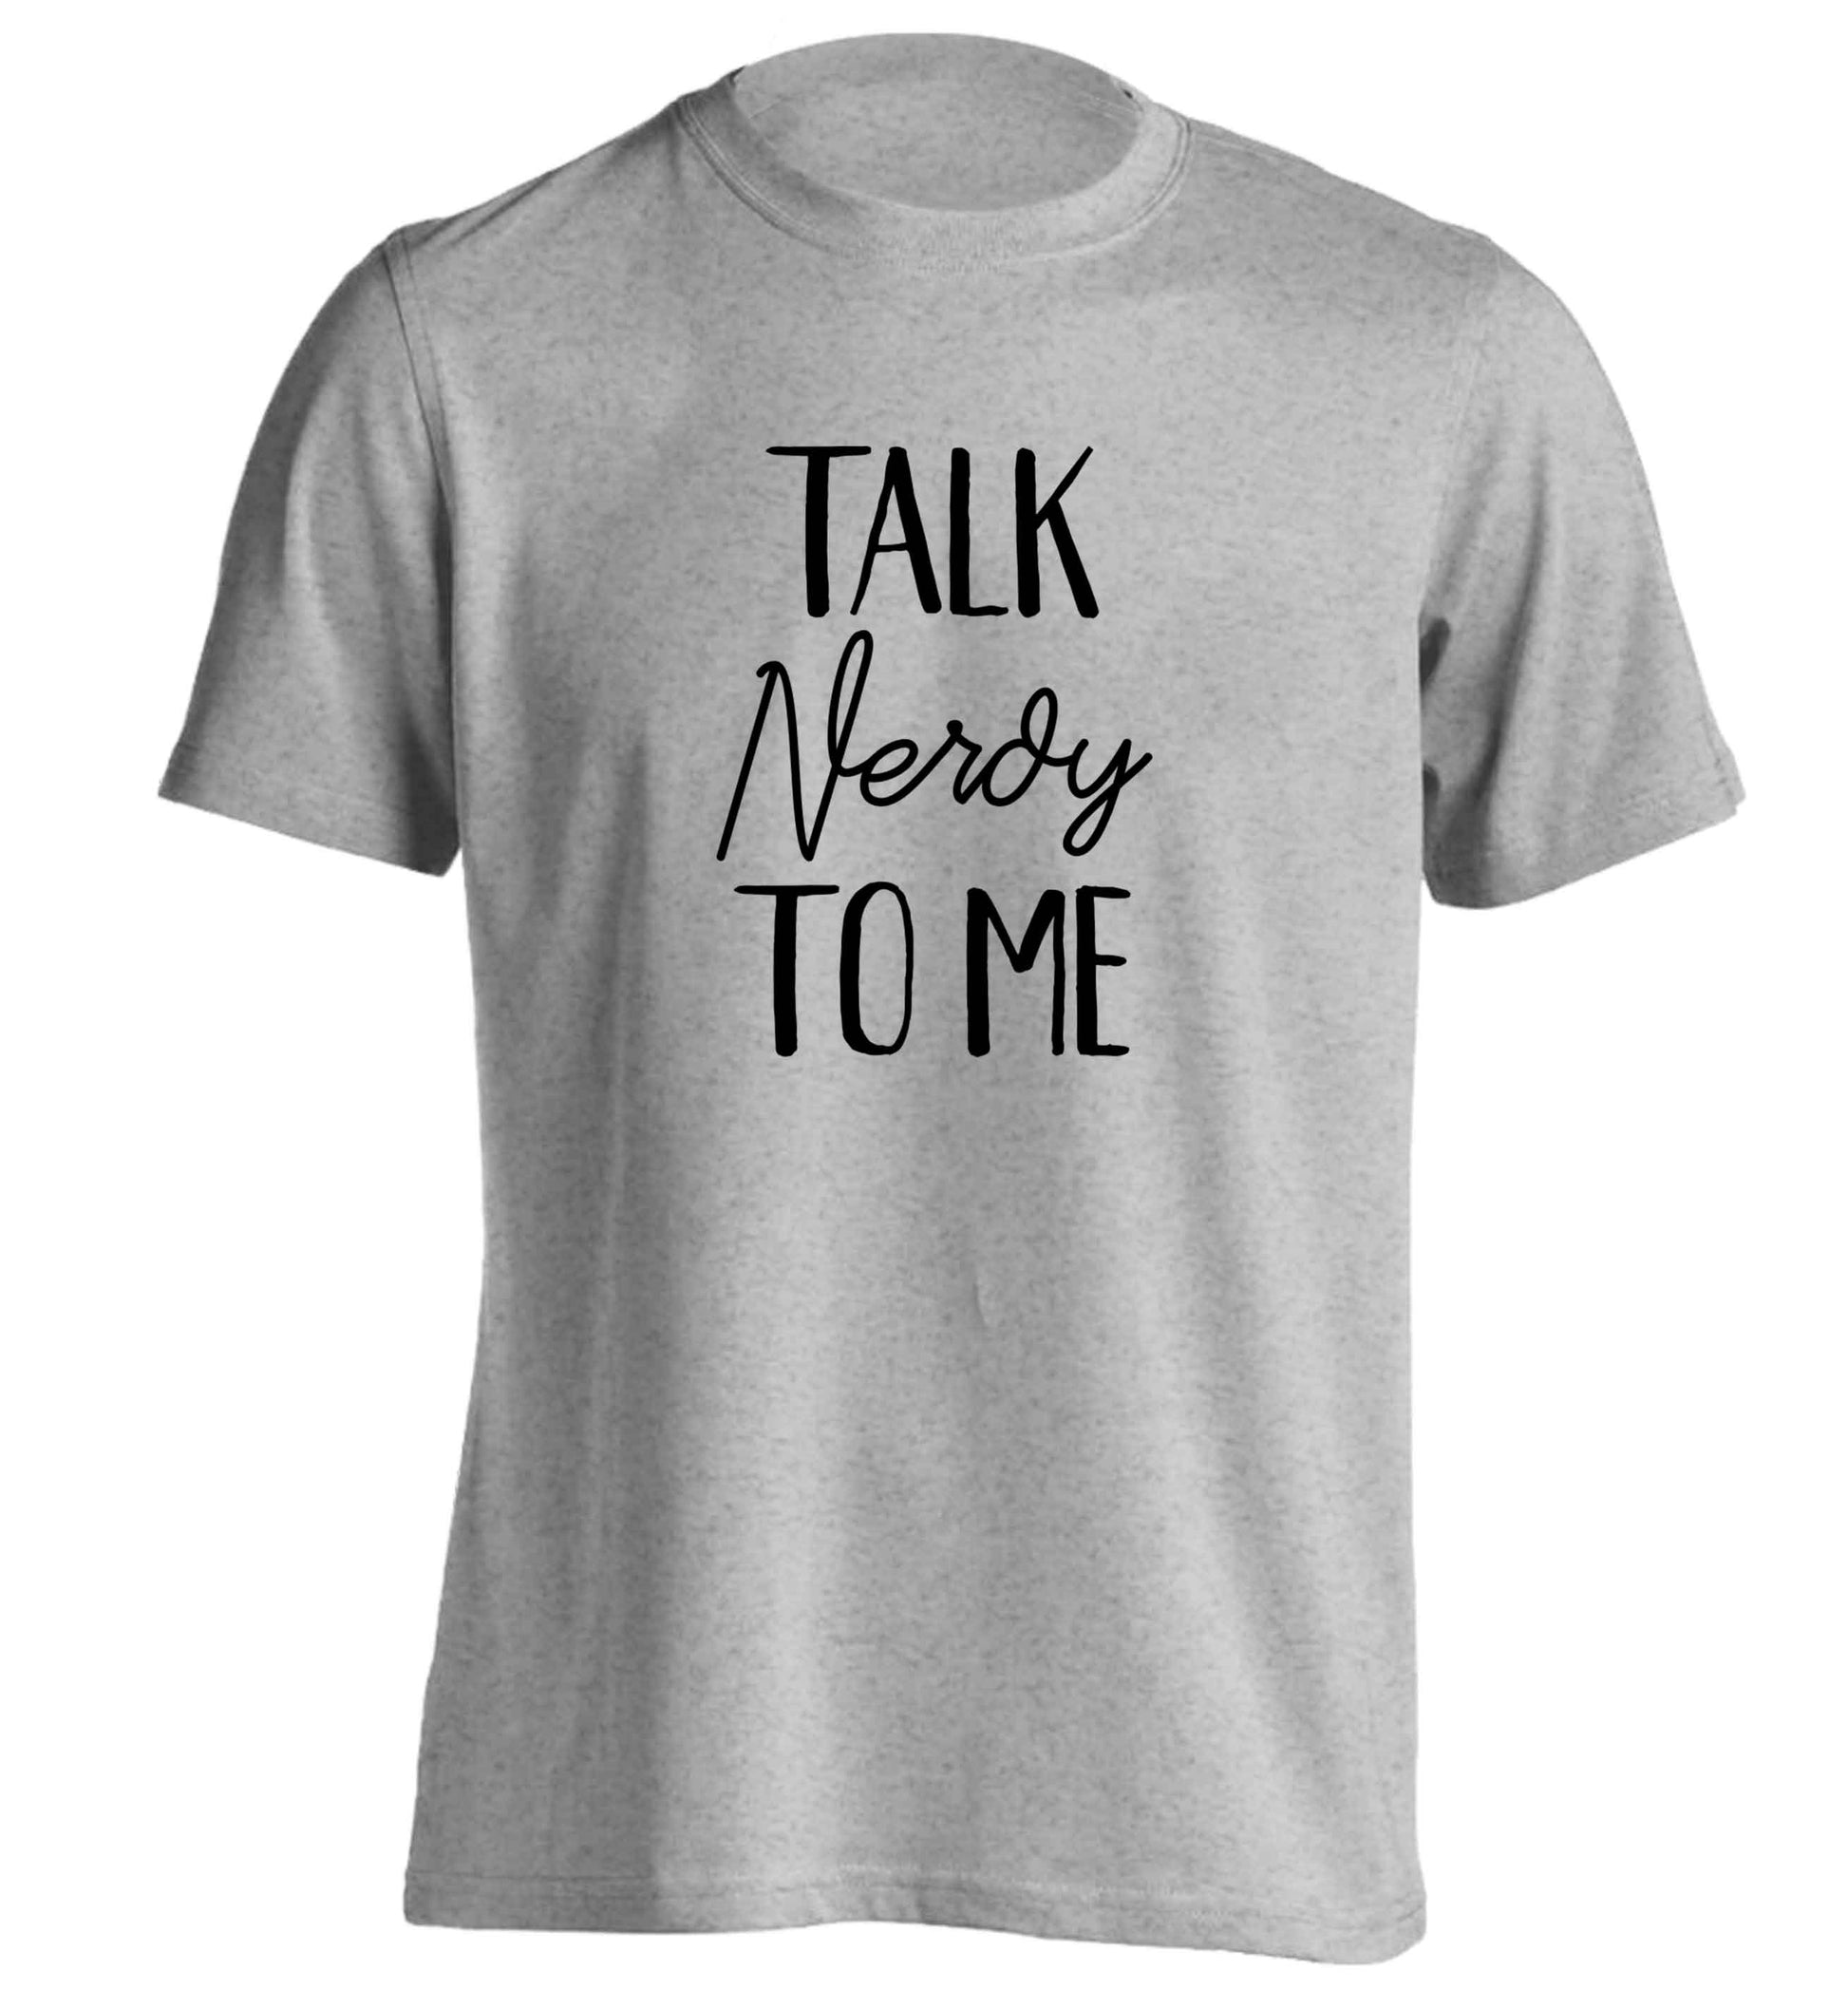 Talk nerdy to me adults unisex grey Tshirt 2XL